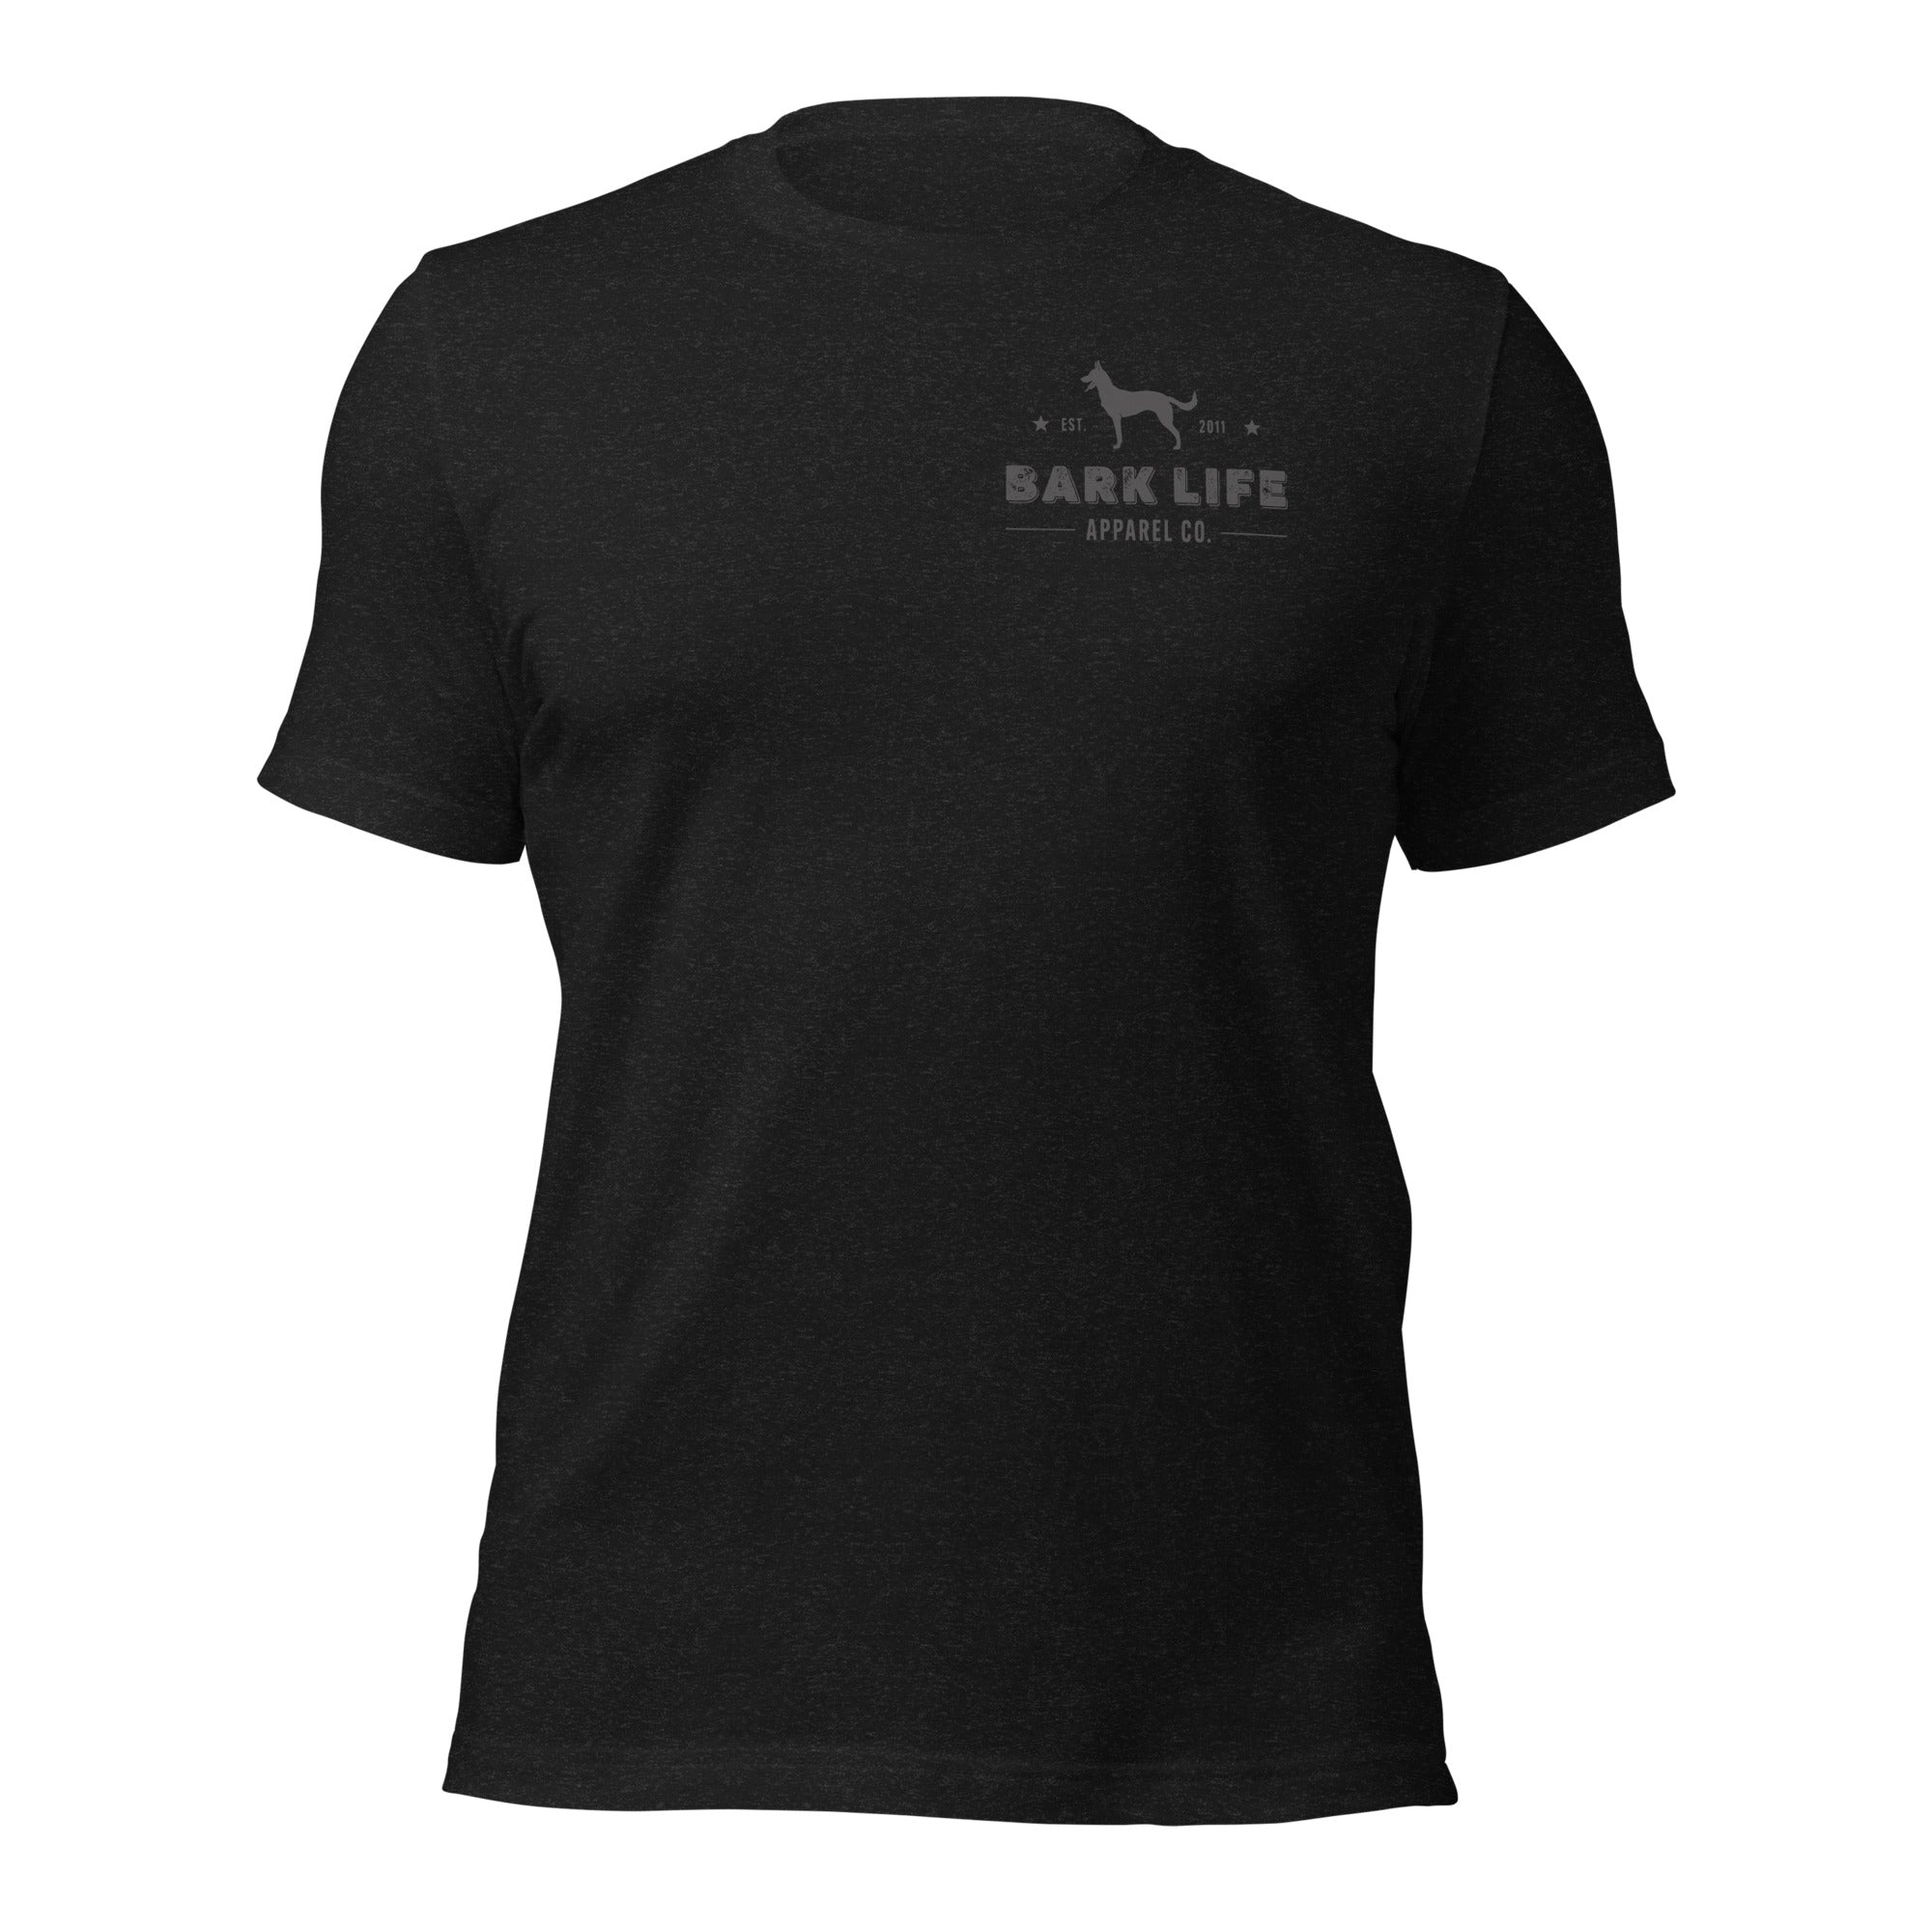 Malinois - Short Sleeve Cotton Tee Shirt